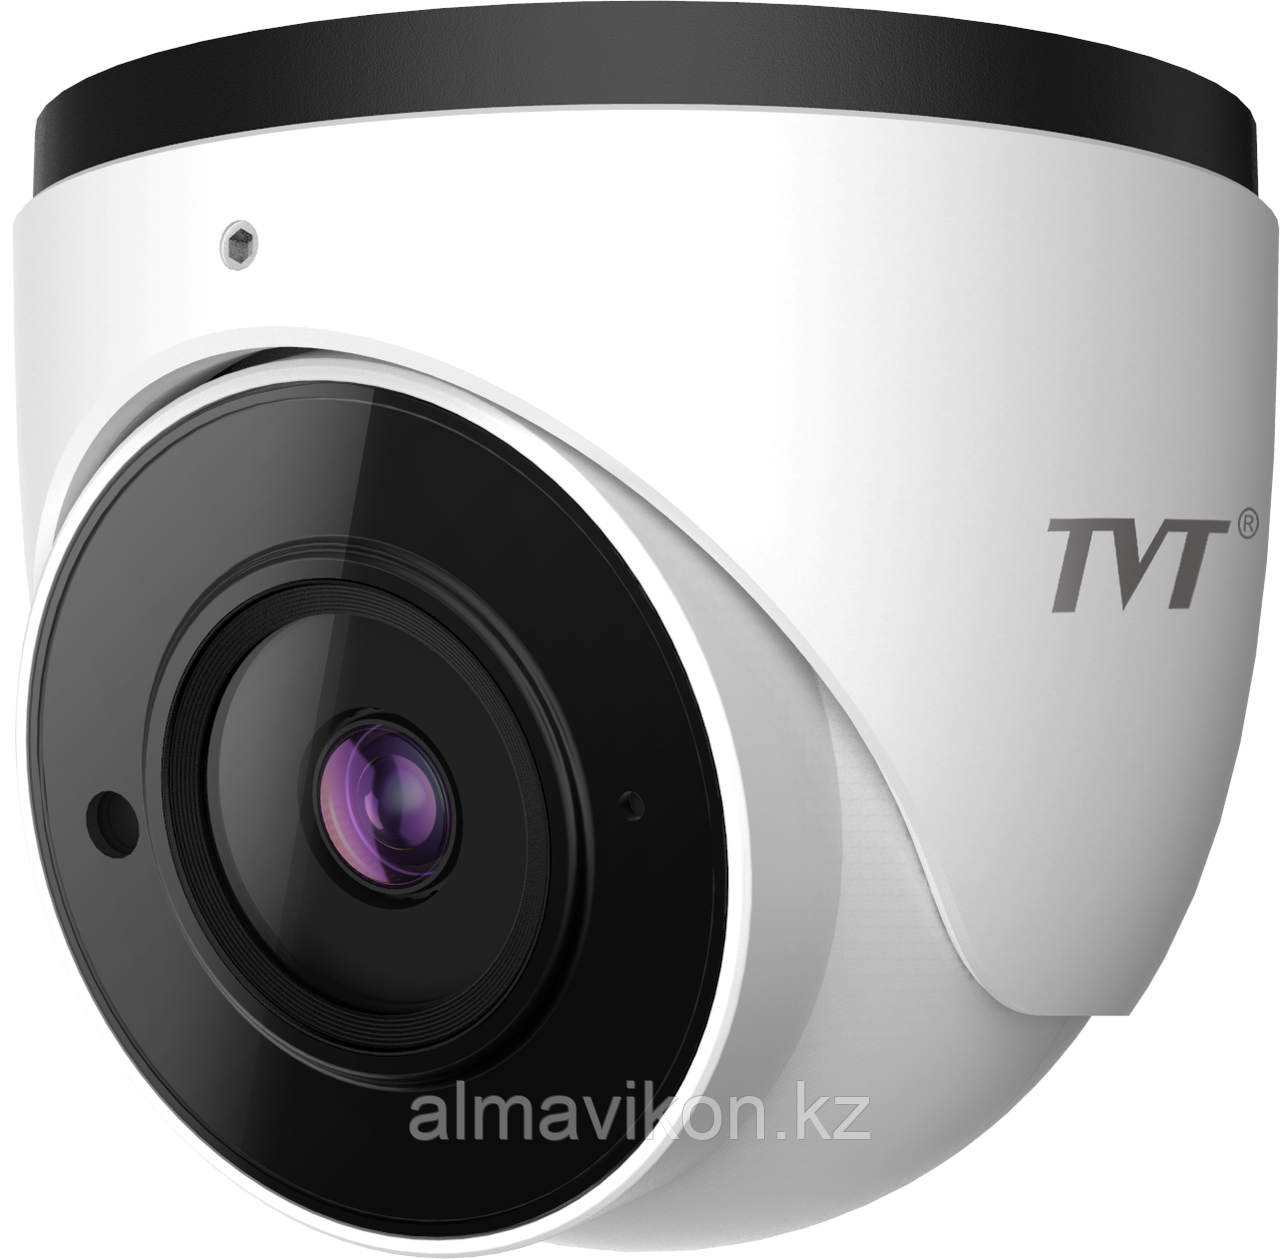 Видеокамера с распознаванием лиц IP 2mp TVT TD-9554E2